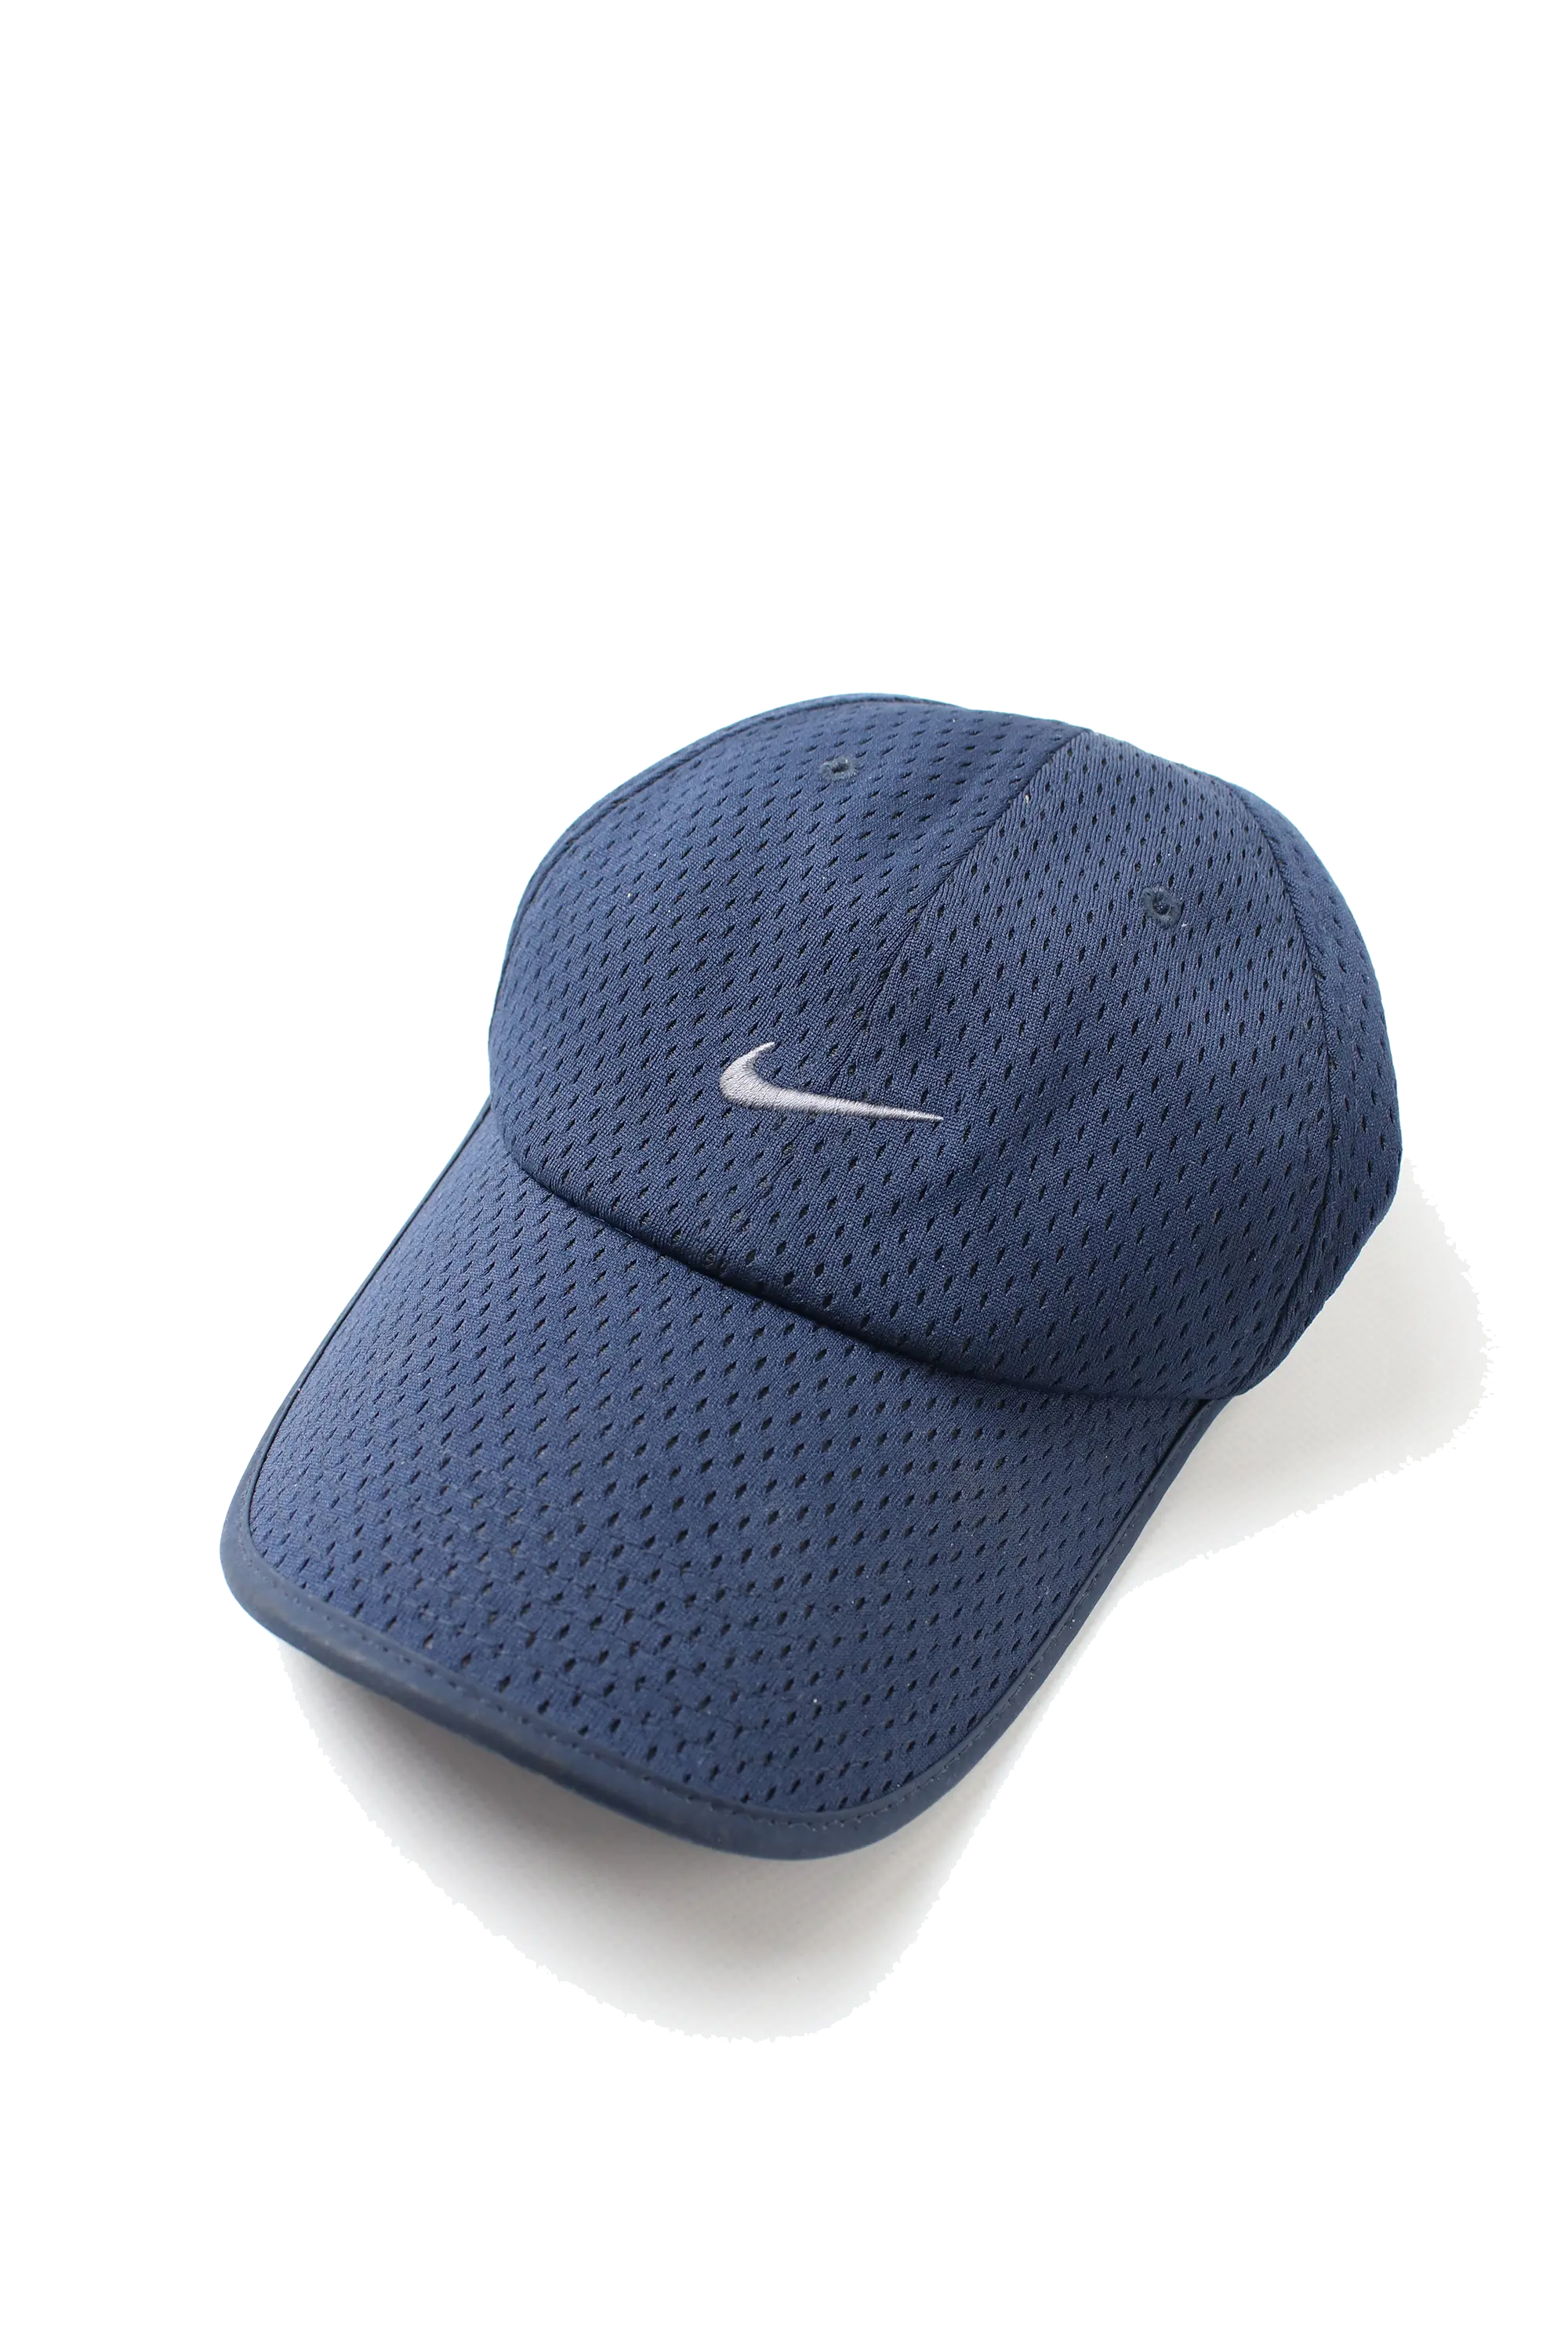 Nike Mesh Cap